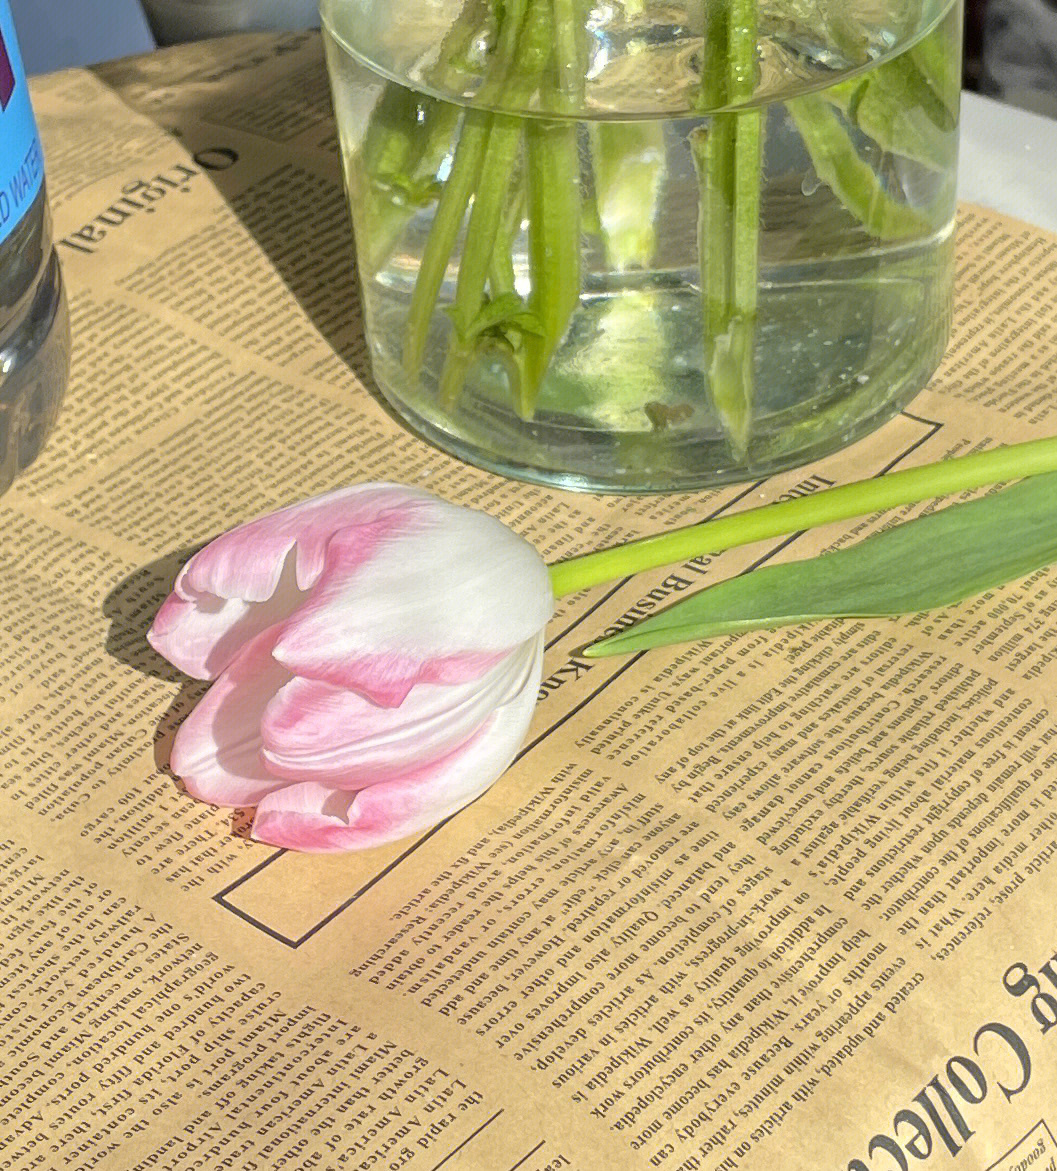 郁金香花束插水里蔫了图片